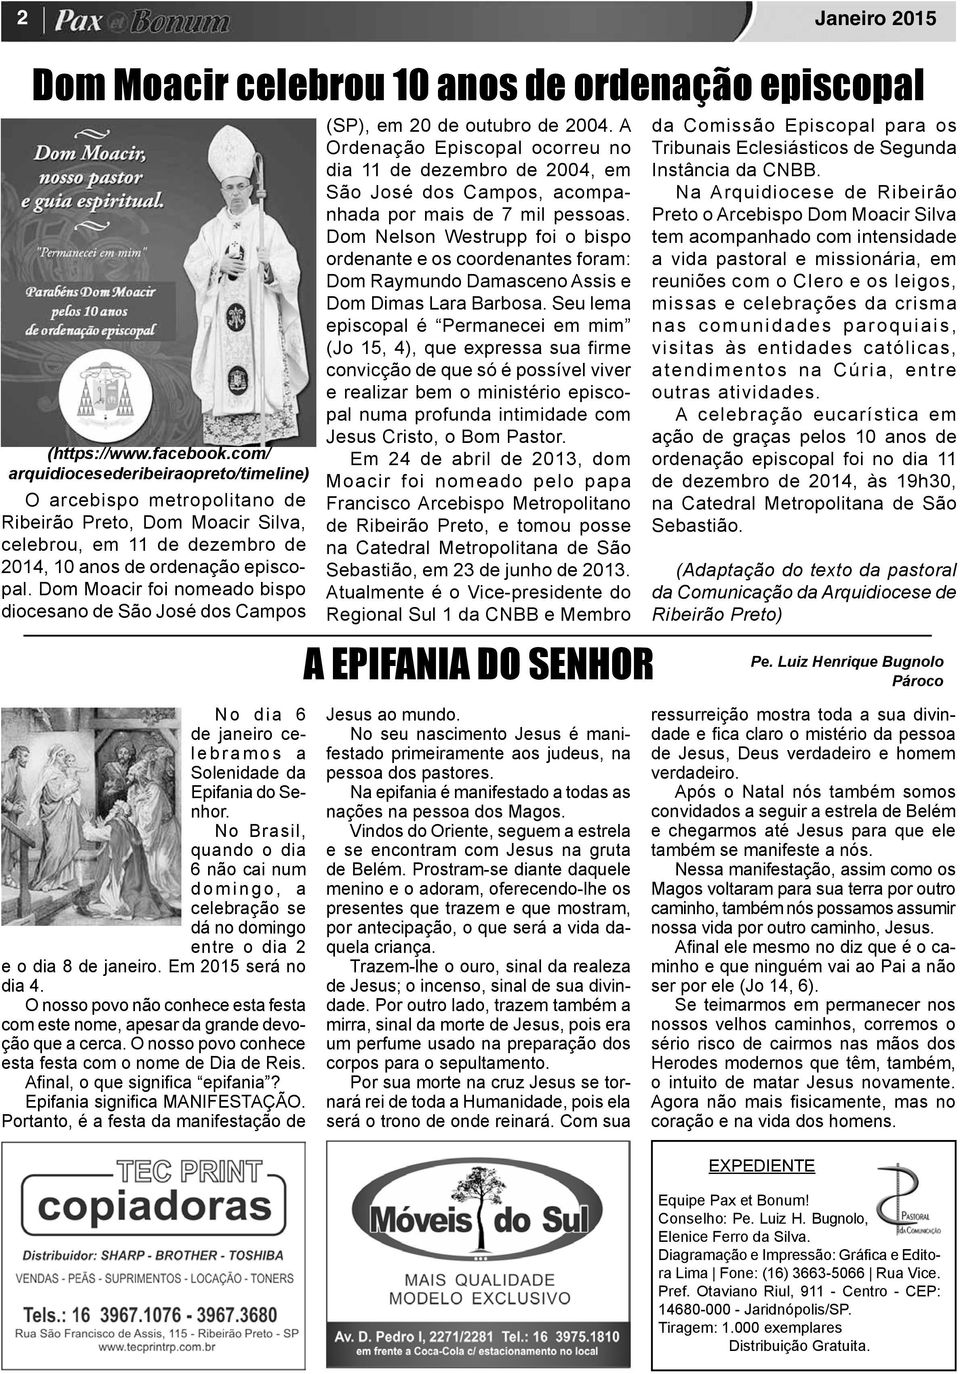 Dom Moacir foi nomeado bispo diocesano de São José dos Campos (SP), em 20 de outubro de 2004.